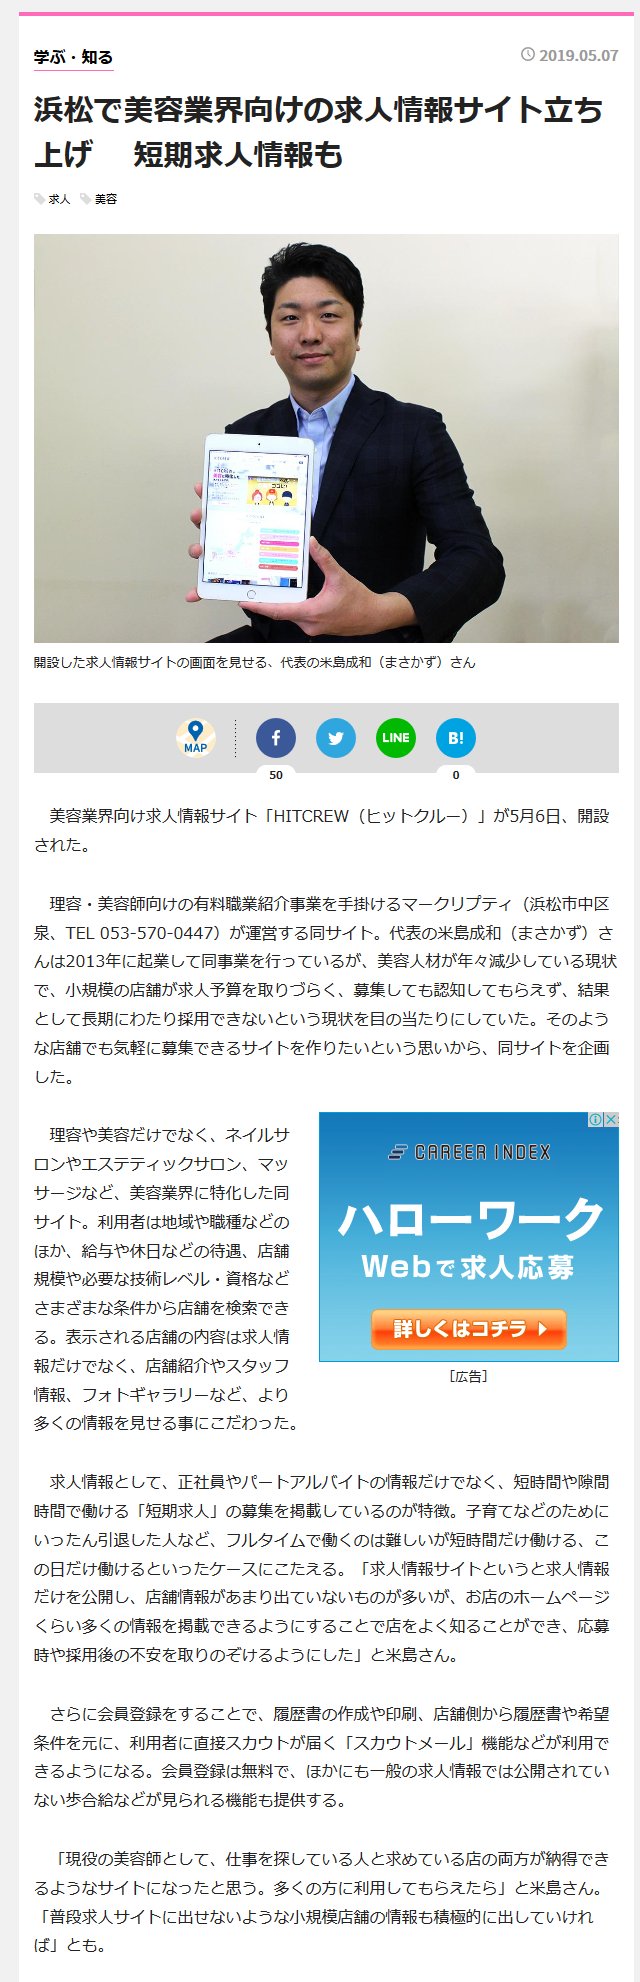 経済 新聞 浜松 「浜松市」のニュース一覧: 日本経済新聞